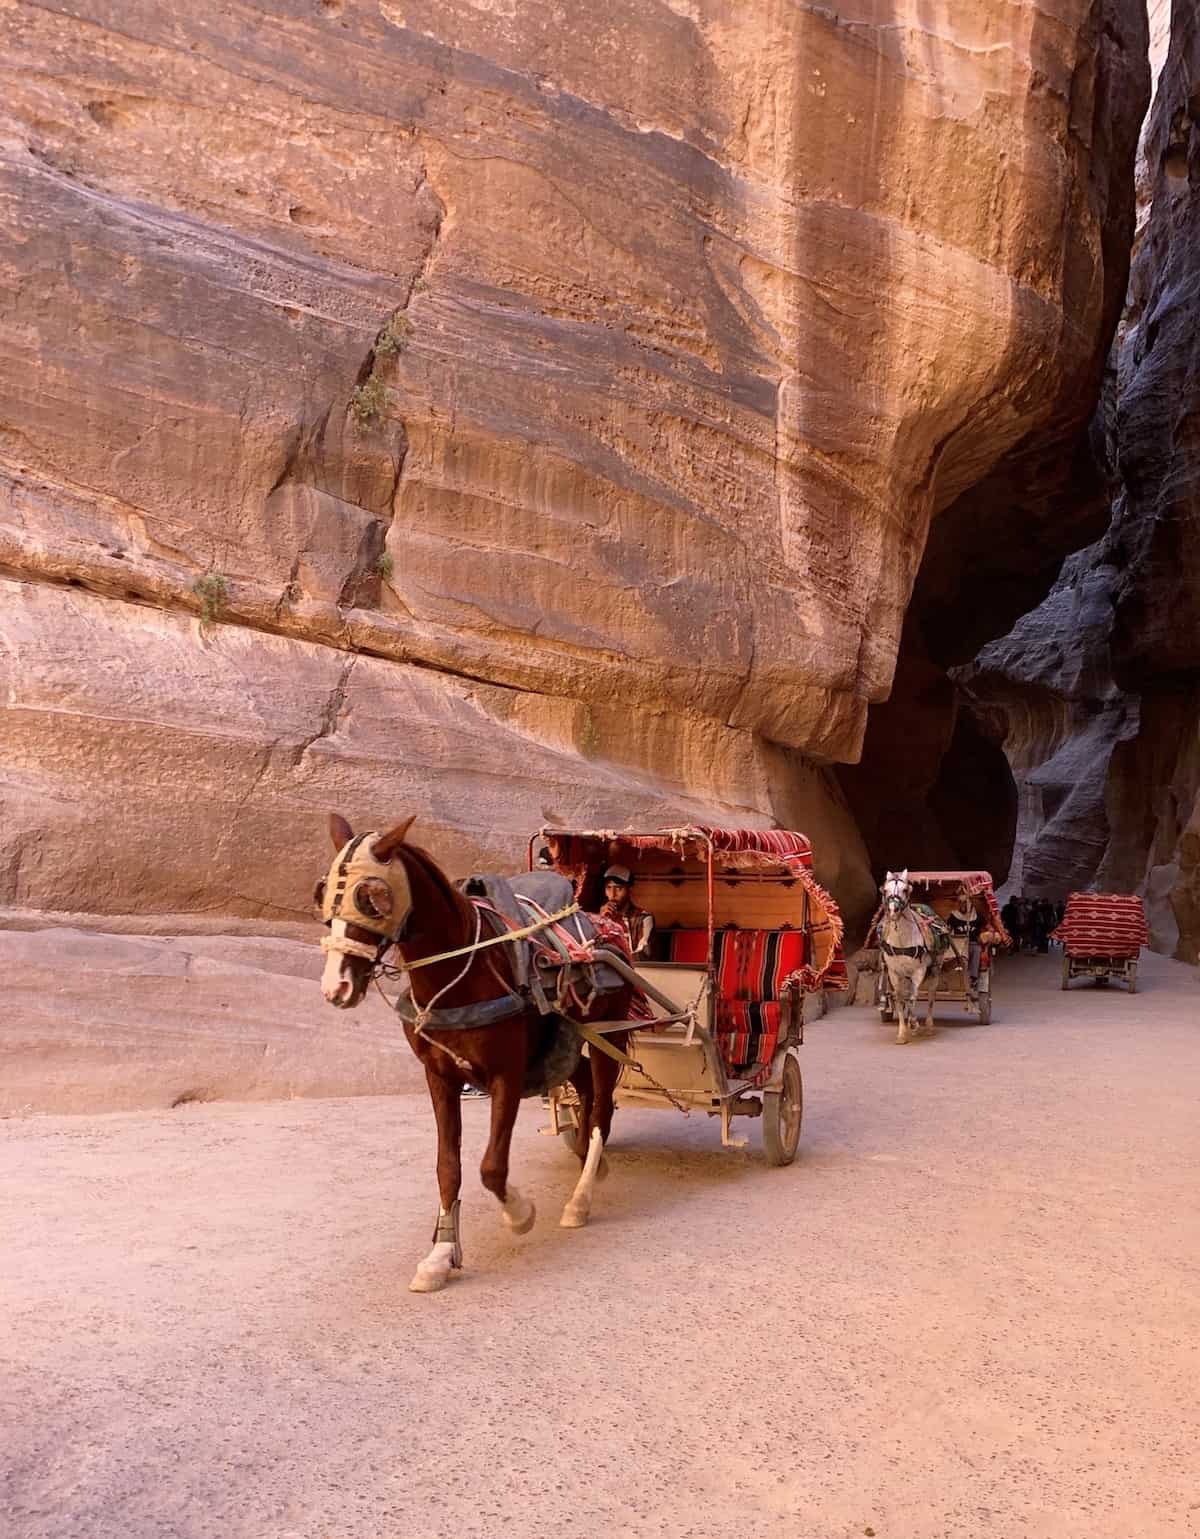 Horse pulling rider in Petra Jordan.